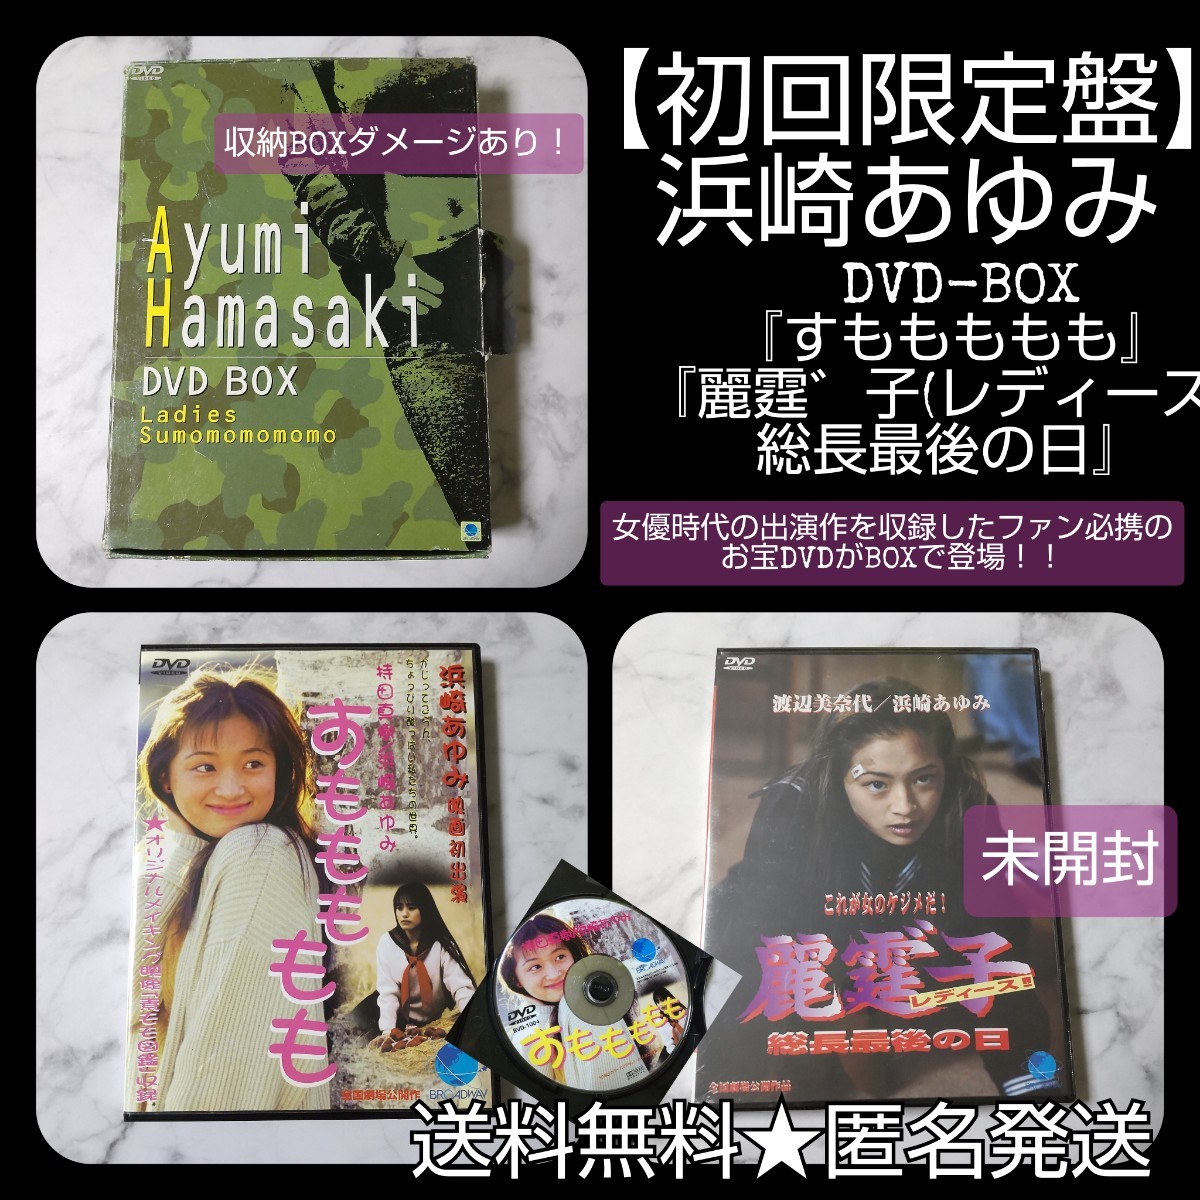 初回限定盤】浜崎あゆみ DVD-BOX『すももももも』『麗霆゛子